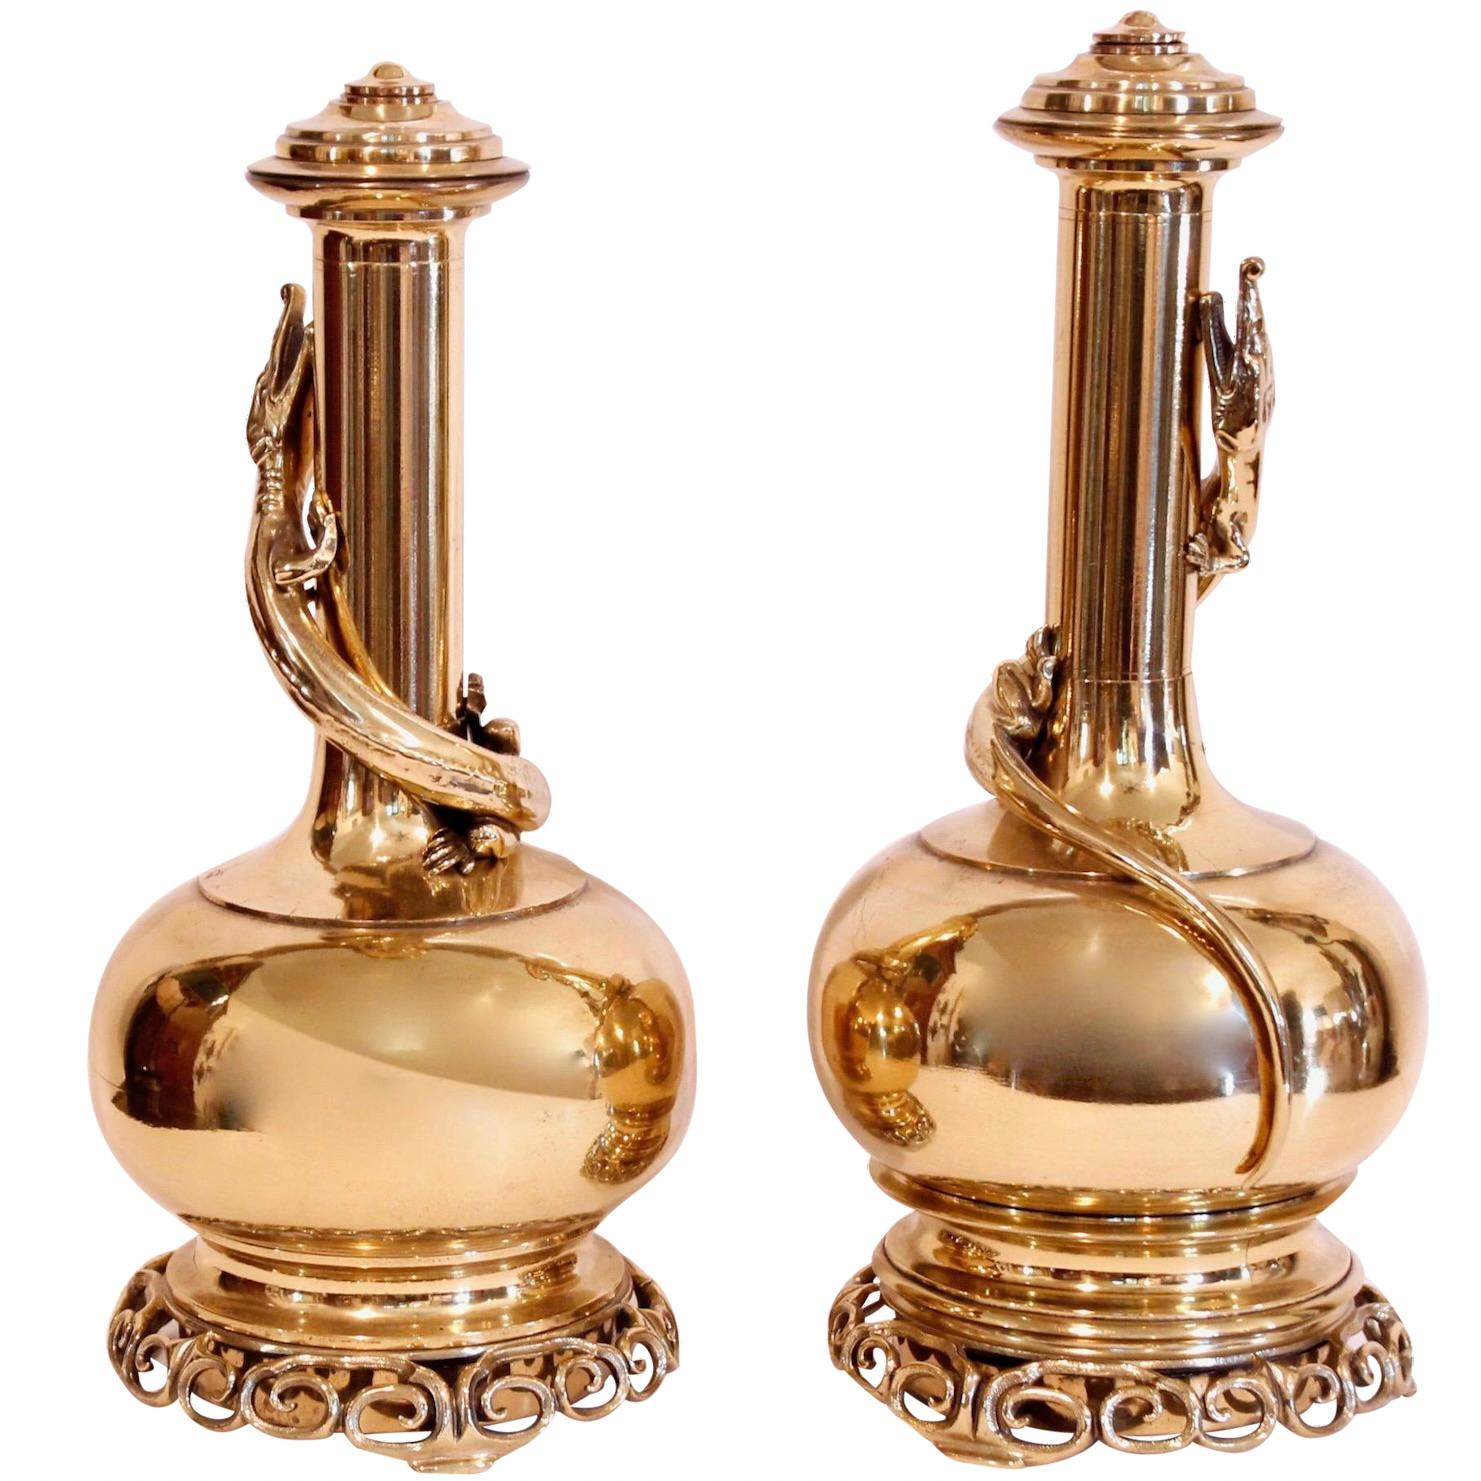 Ein auffälliges und dekoratives Paar hübscher Messingflaschen, ursprünglich Öllampen,  mit komplizierten durchbrochenen Laubsägearbeiten. Eine alligatorähnliche Eidechse ist um jeden gewickelt. Oben auf jeder Öffnung befindet sich ein